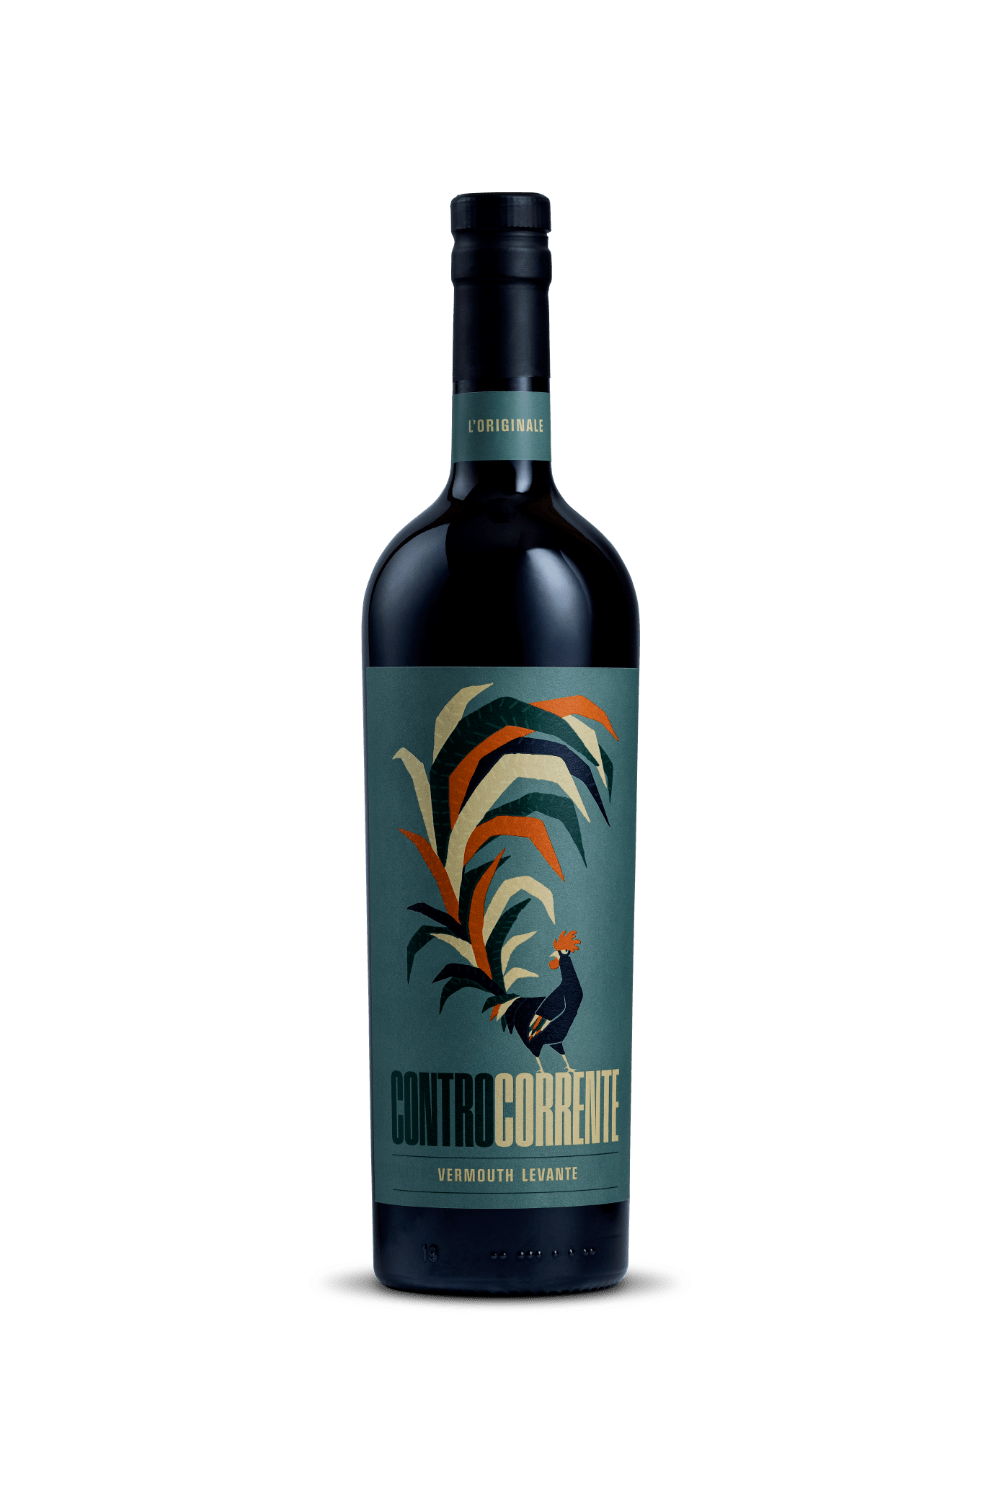 Controcorrente Vermouth Levante